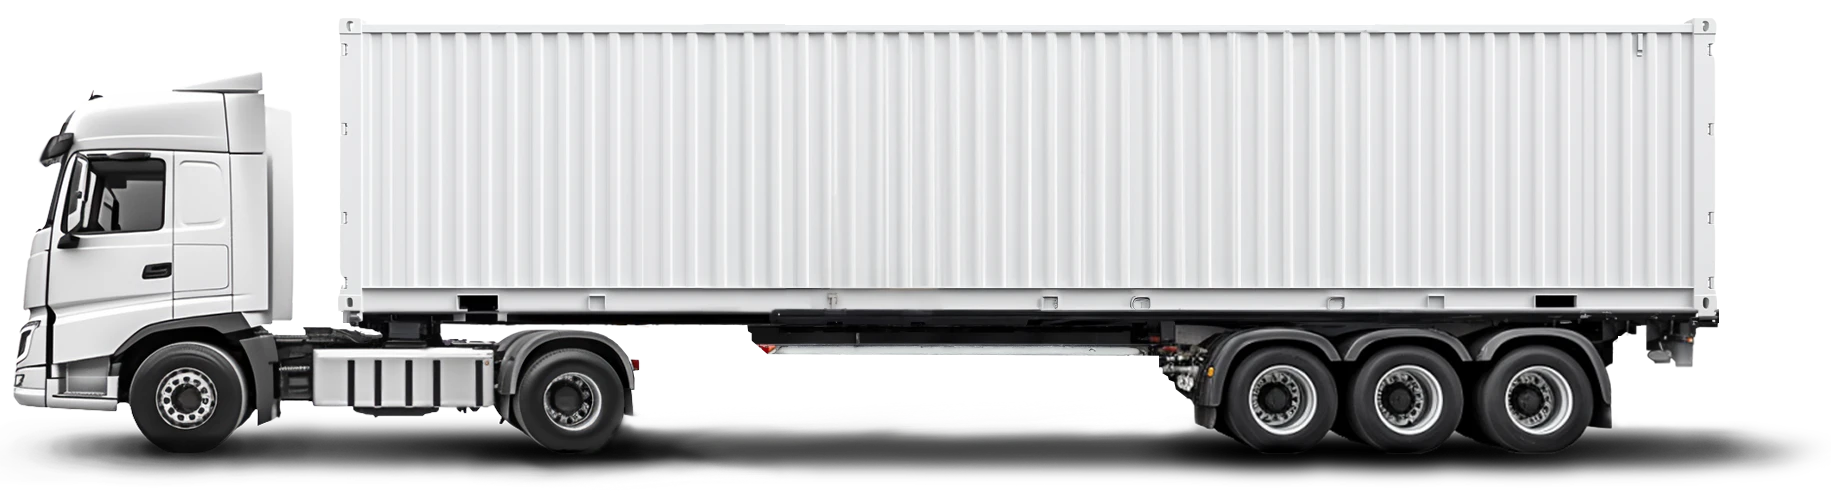 refrigerated van truck load transport